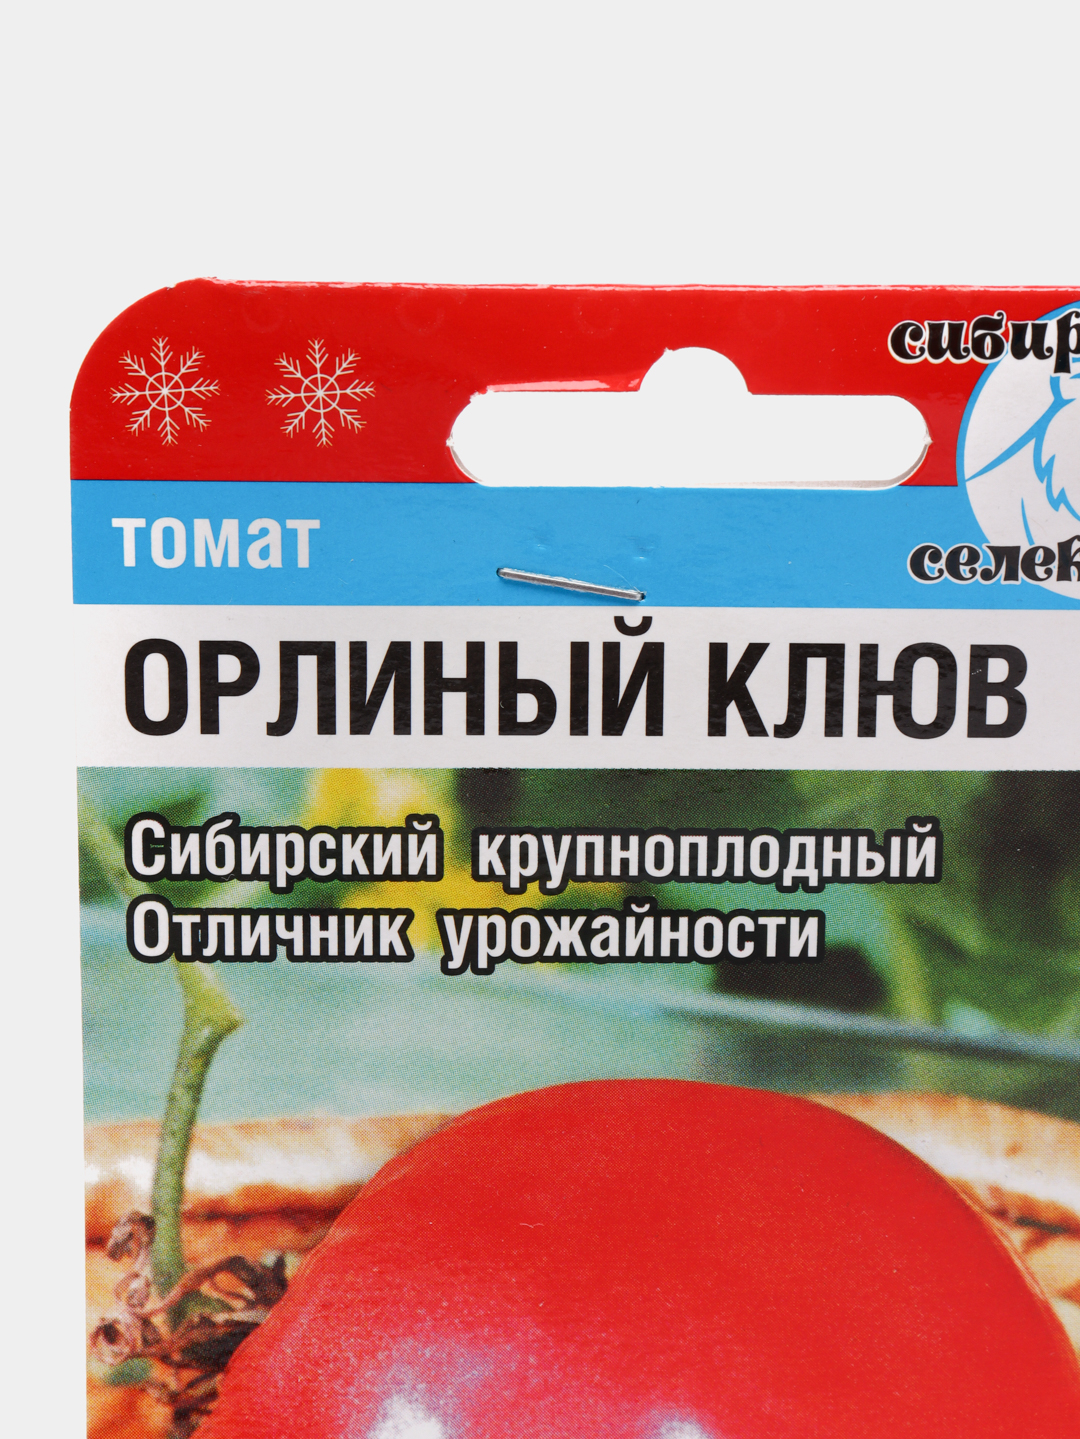 орлиный клюв томат отзывы фото достоинства недостатки